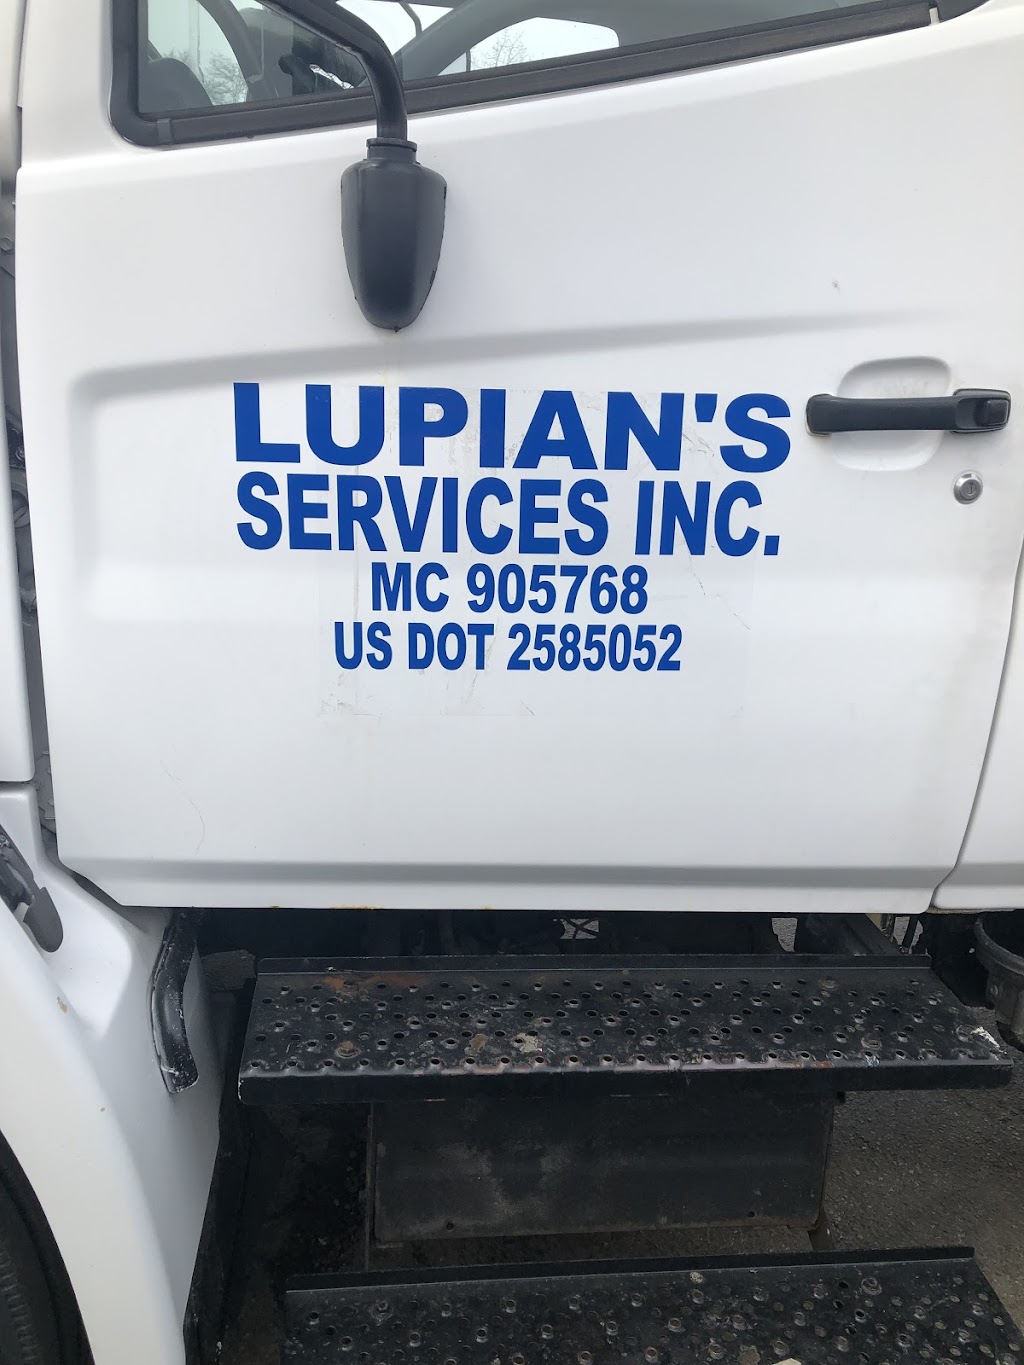 Lupians Services, Inc. | 910 Fairway Dr, Naperville, IL 60563 | Phone: (630) 885-7162